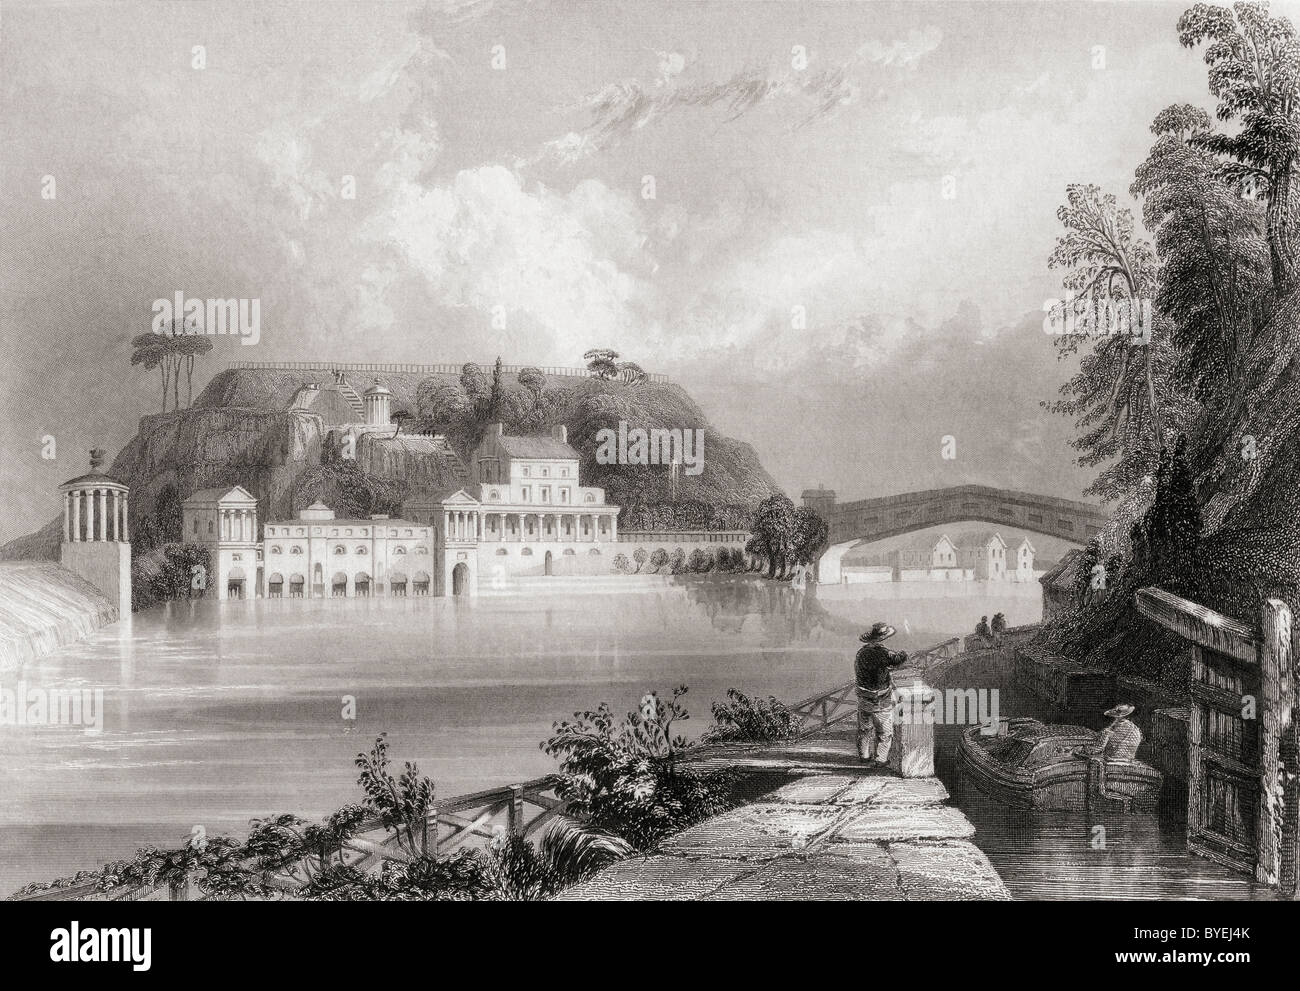 Fairmount Waterworks, Schuylkill River, Philadelphia, Amerika im 19. Jahrhundert. Stockfoto